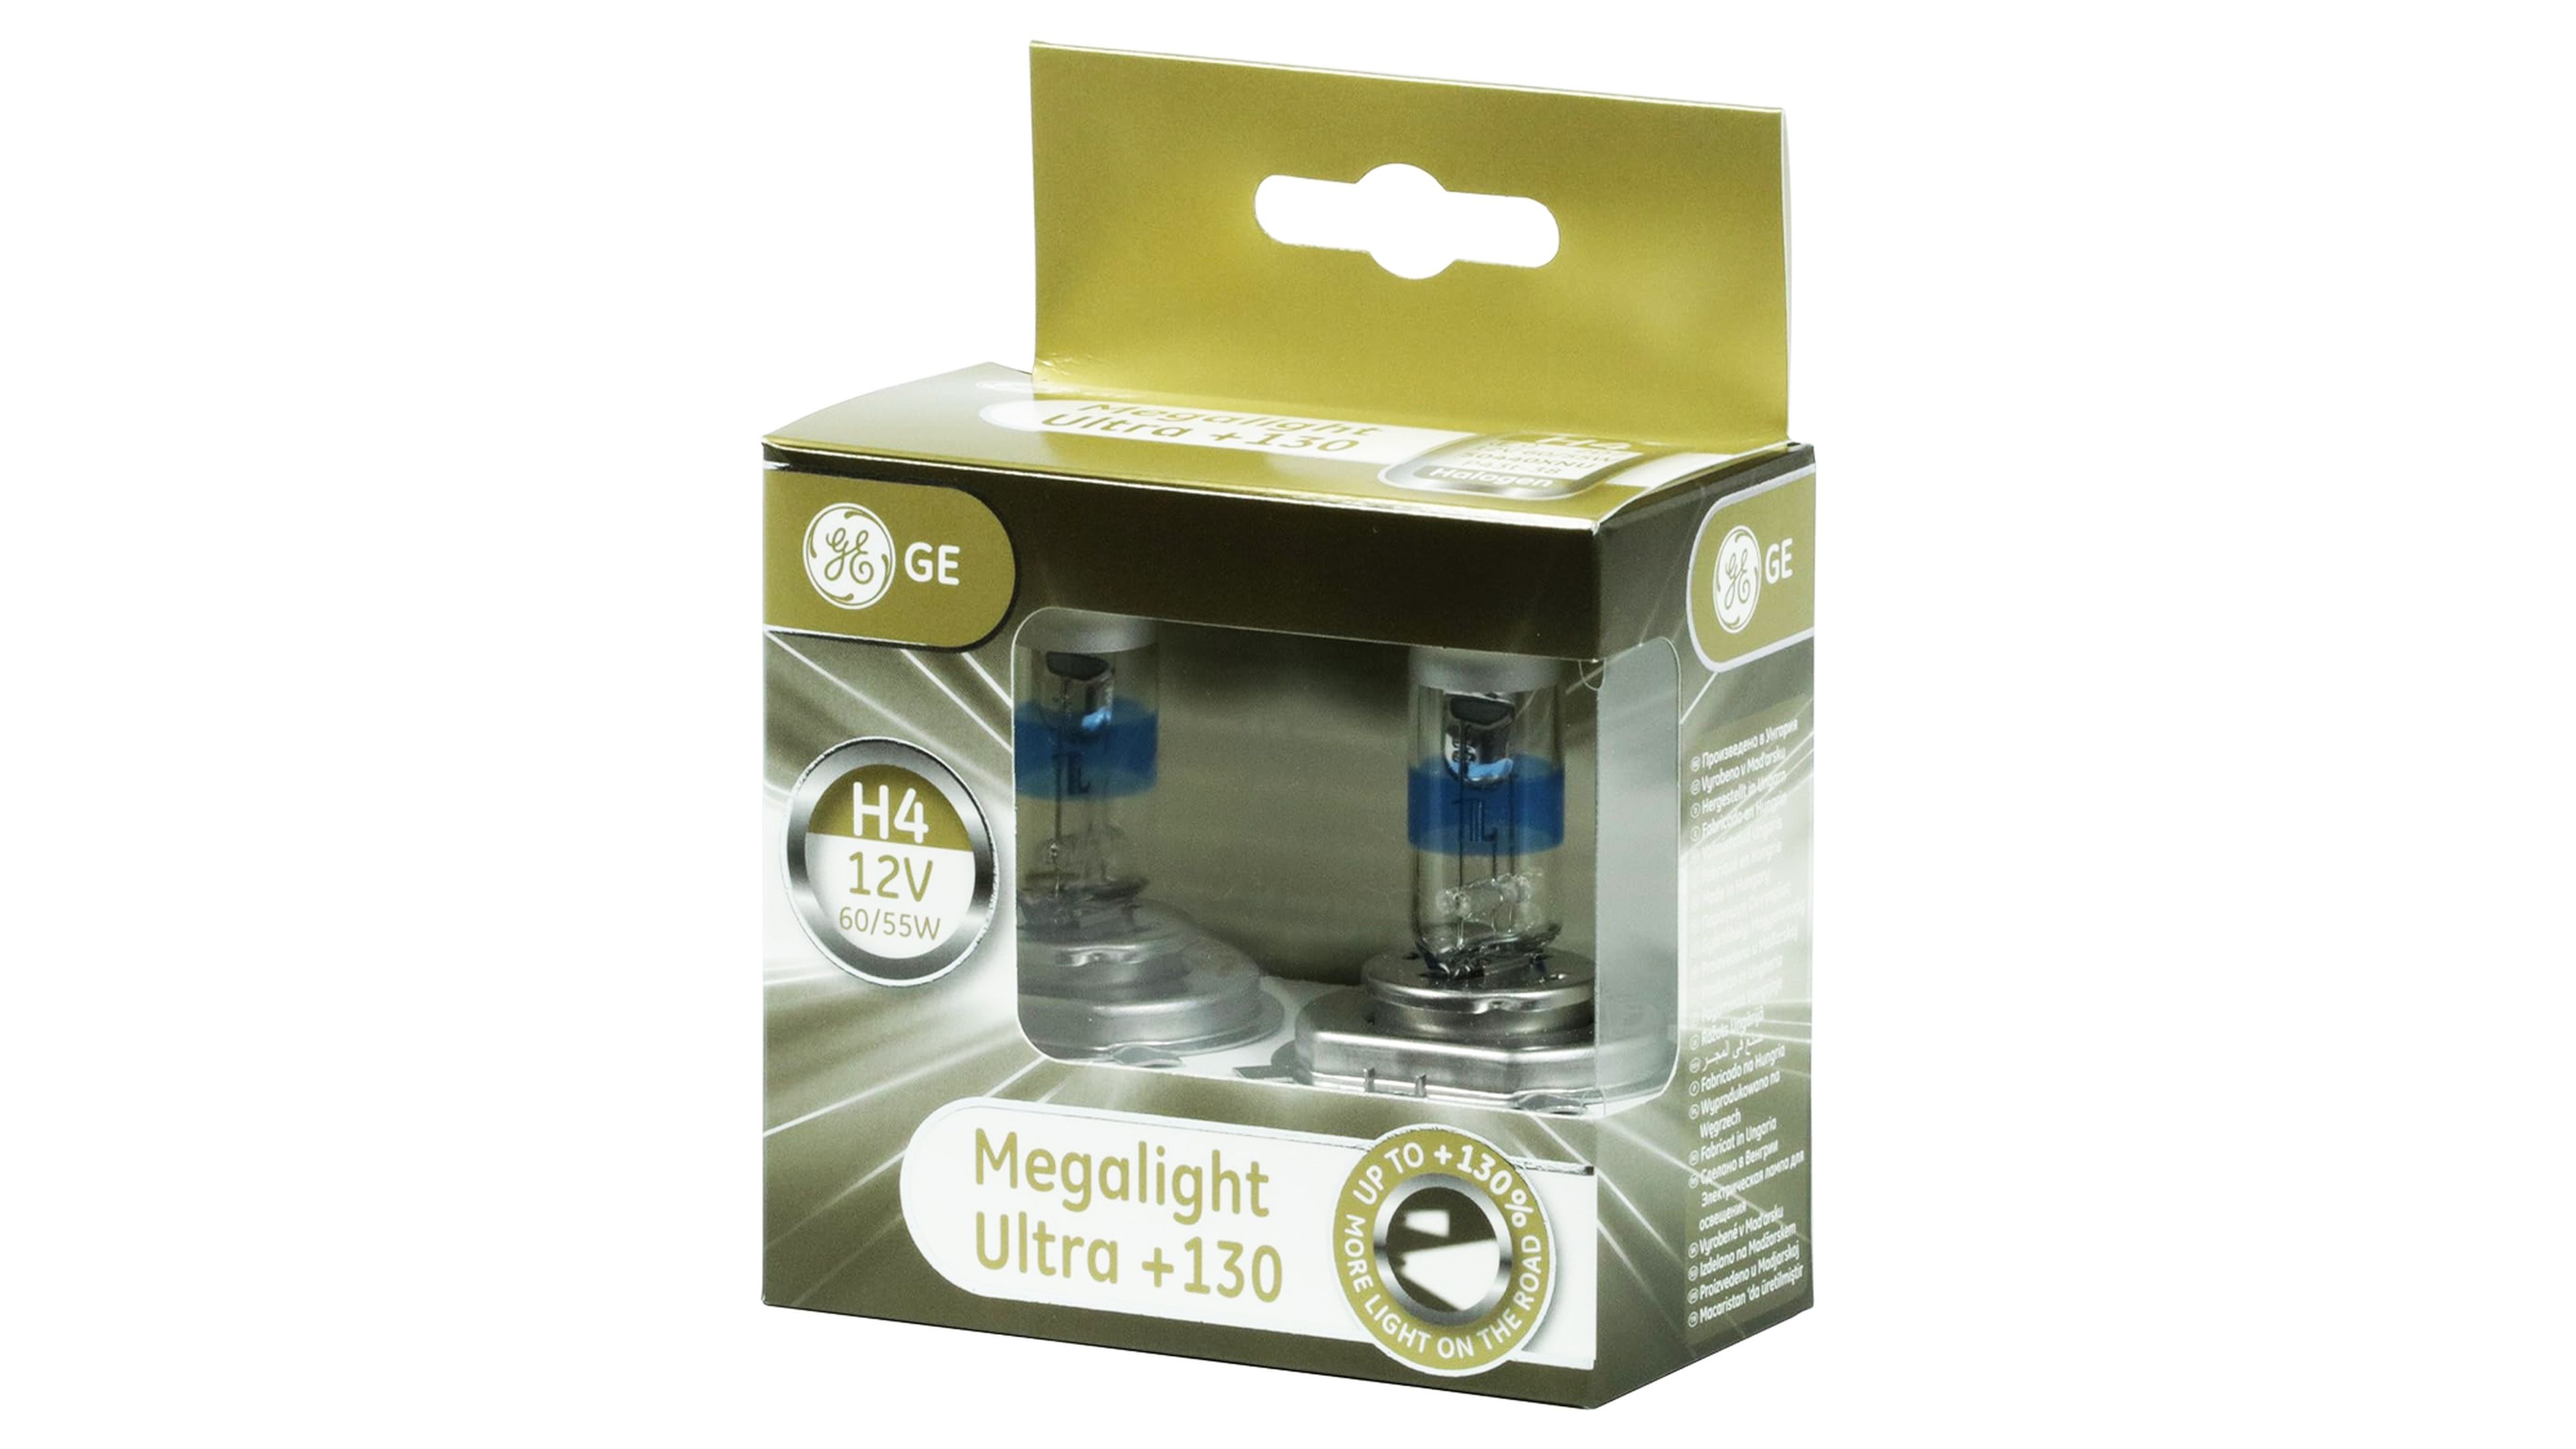 Megalight Ultra + 130%